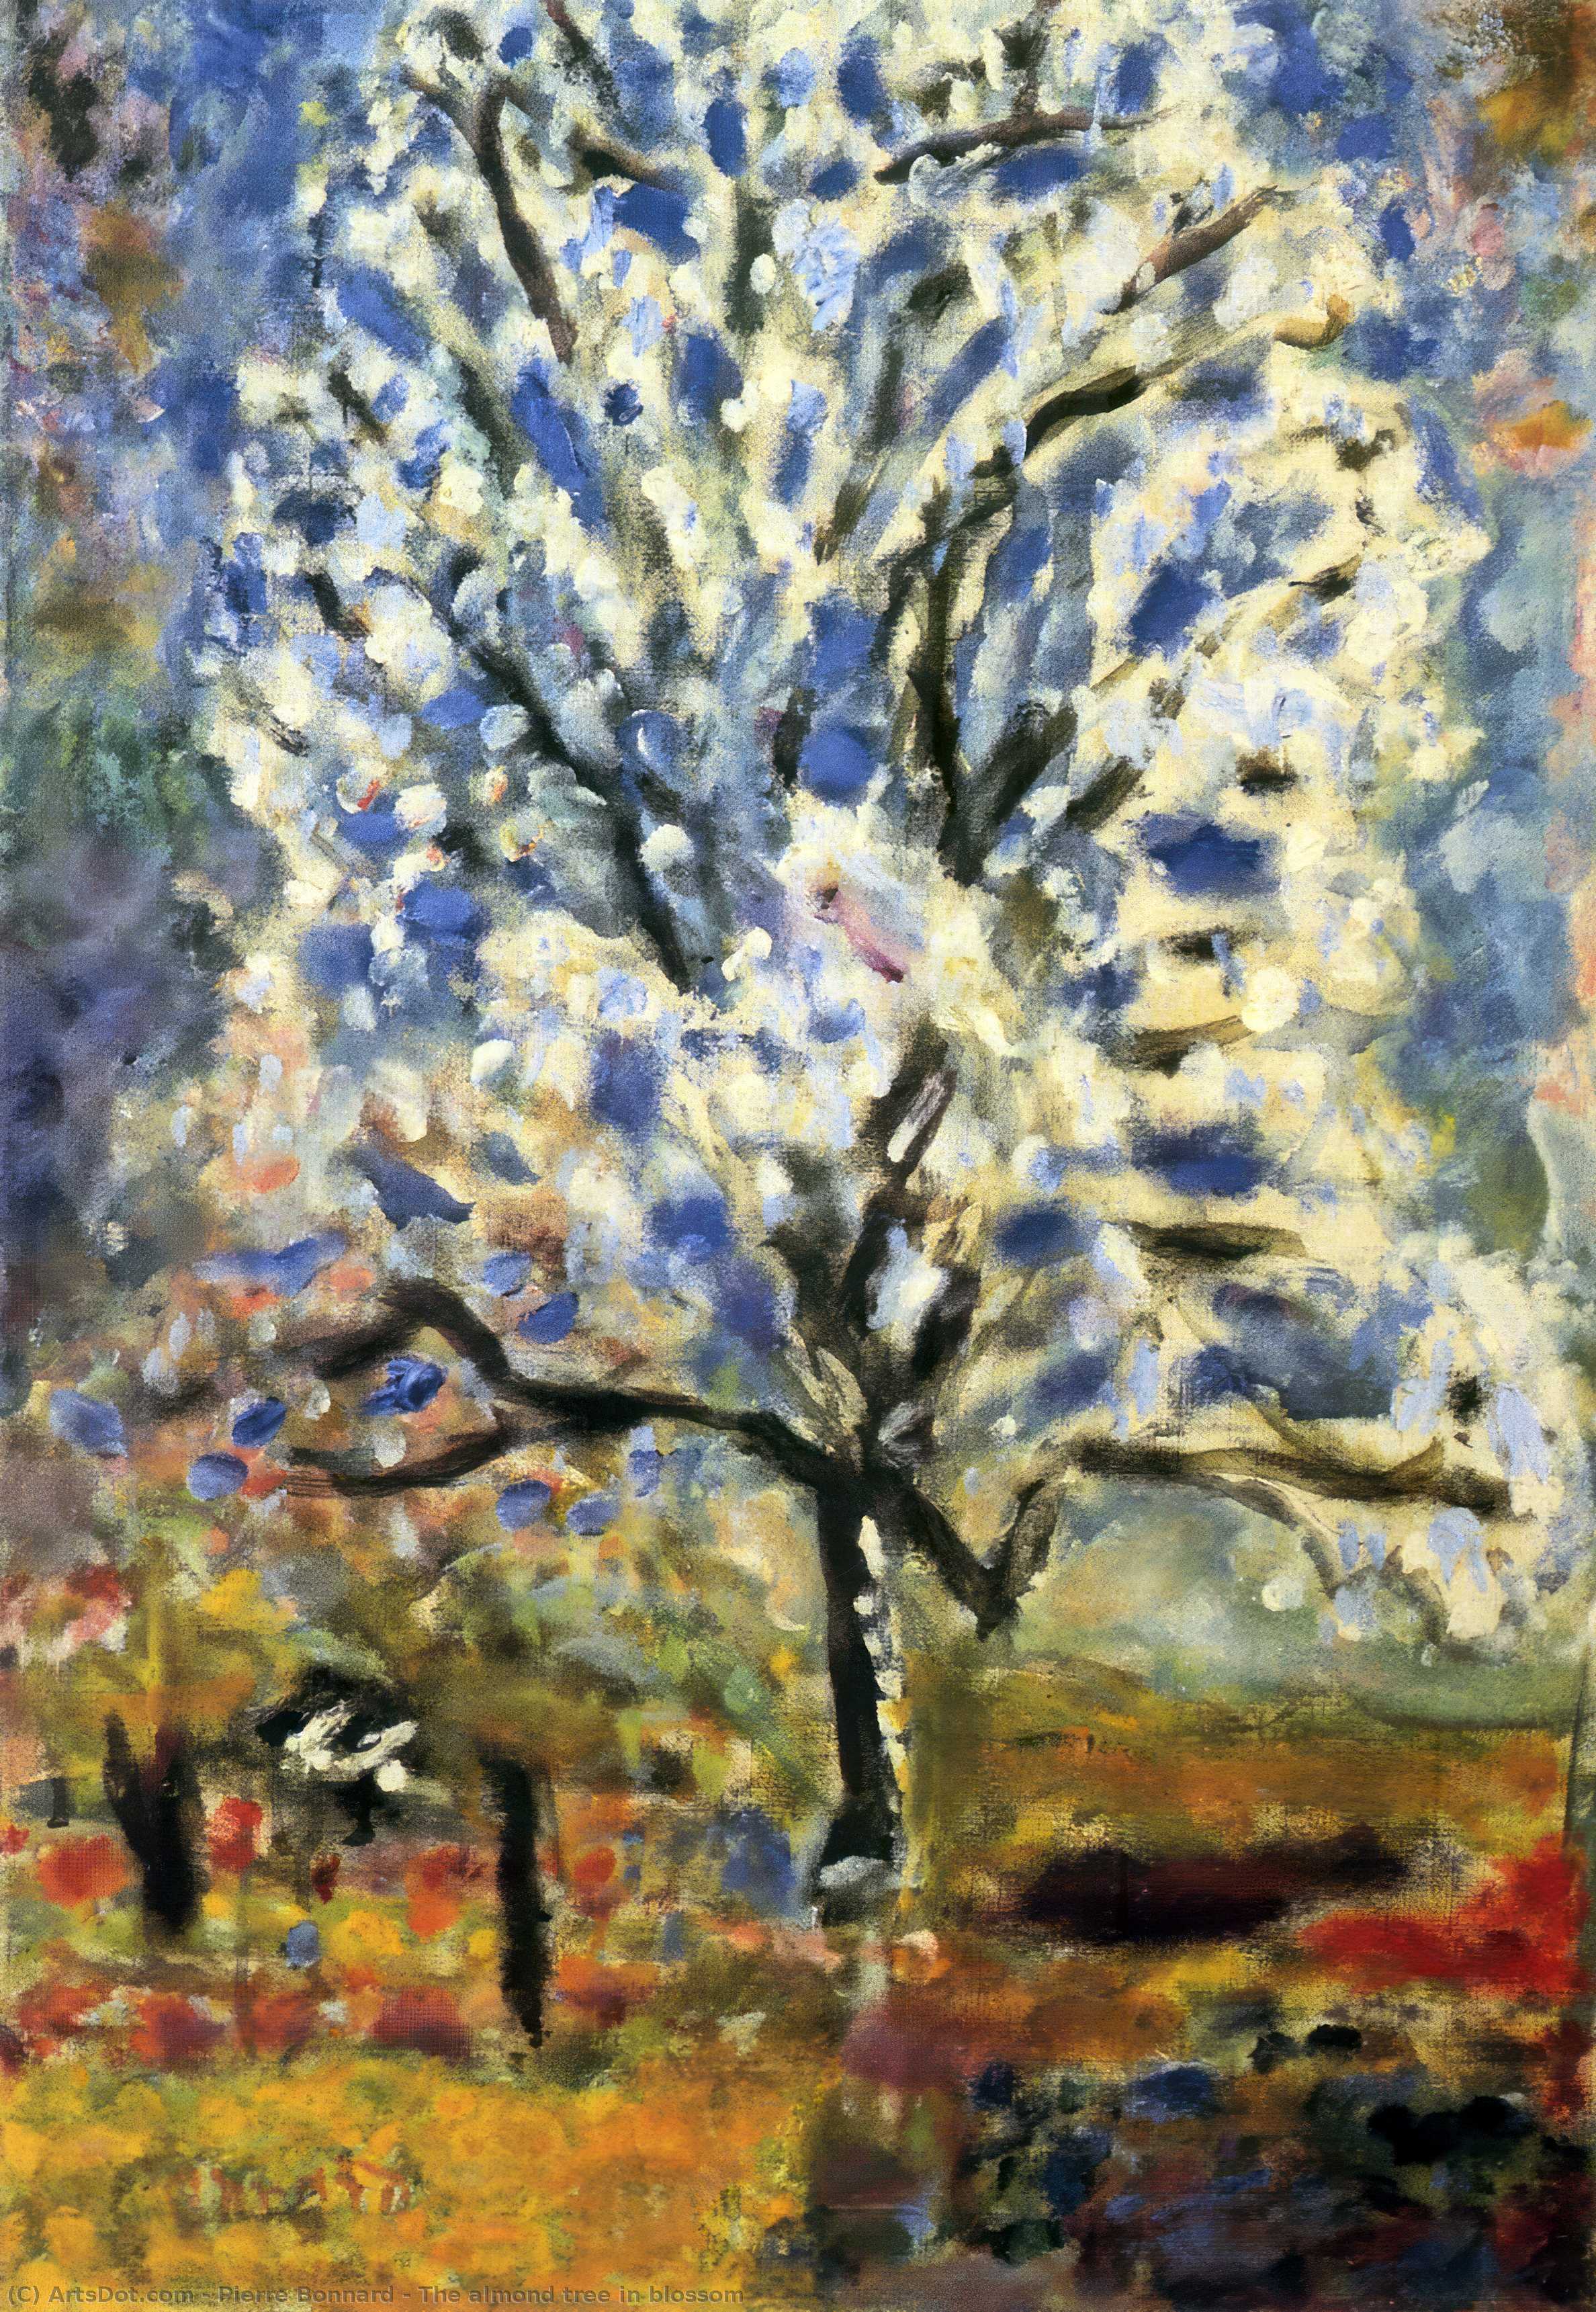 Wikoo.org - موسوعة الفنون الجميلة - اللوحة، العمل الفني Pierre Bonnard - The almond tree in blossom